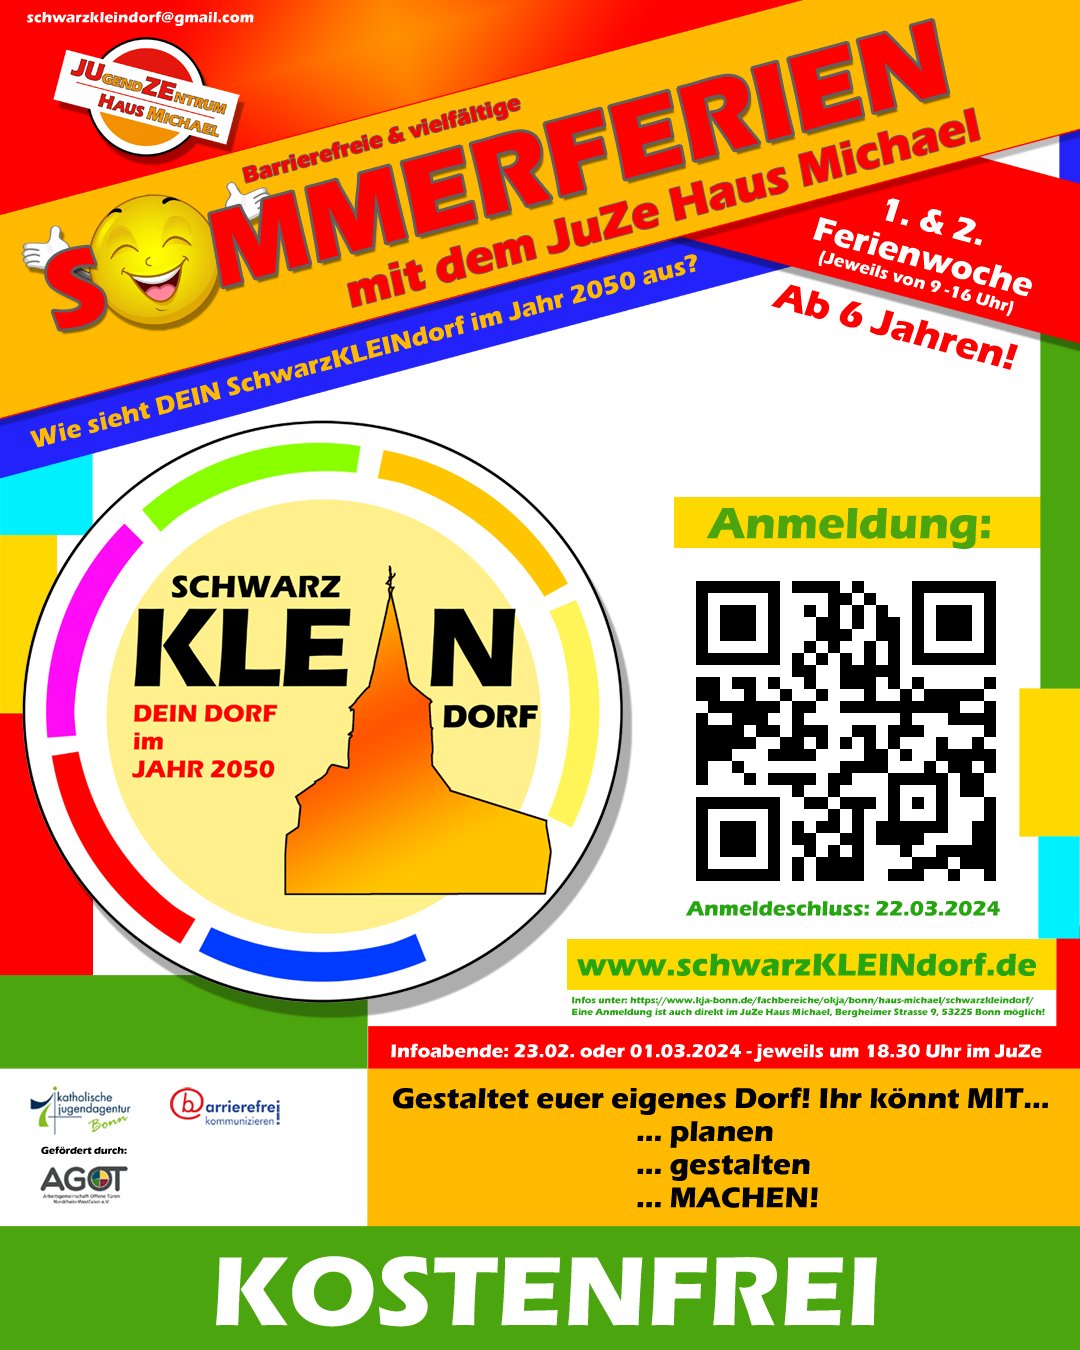 Plakat_SchwarzKLEINdorf_1080_1350_Link_Schwarzkleindorf_SM